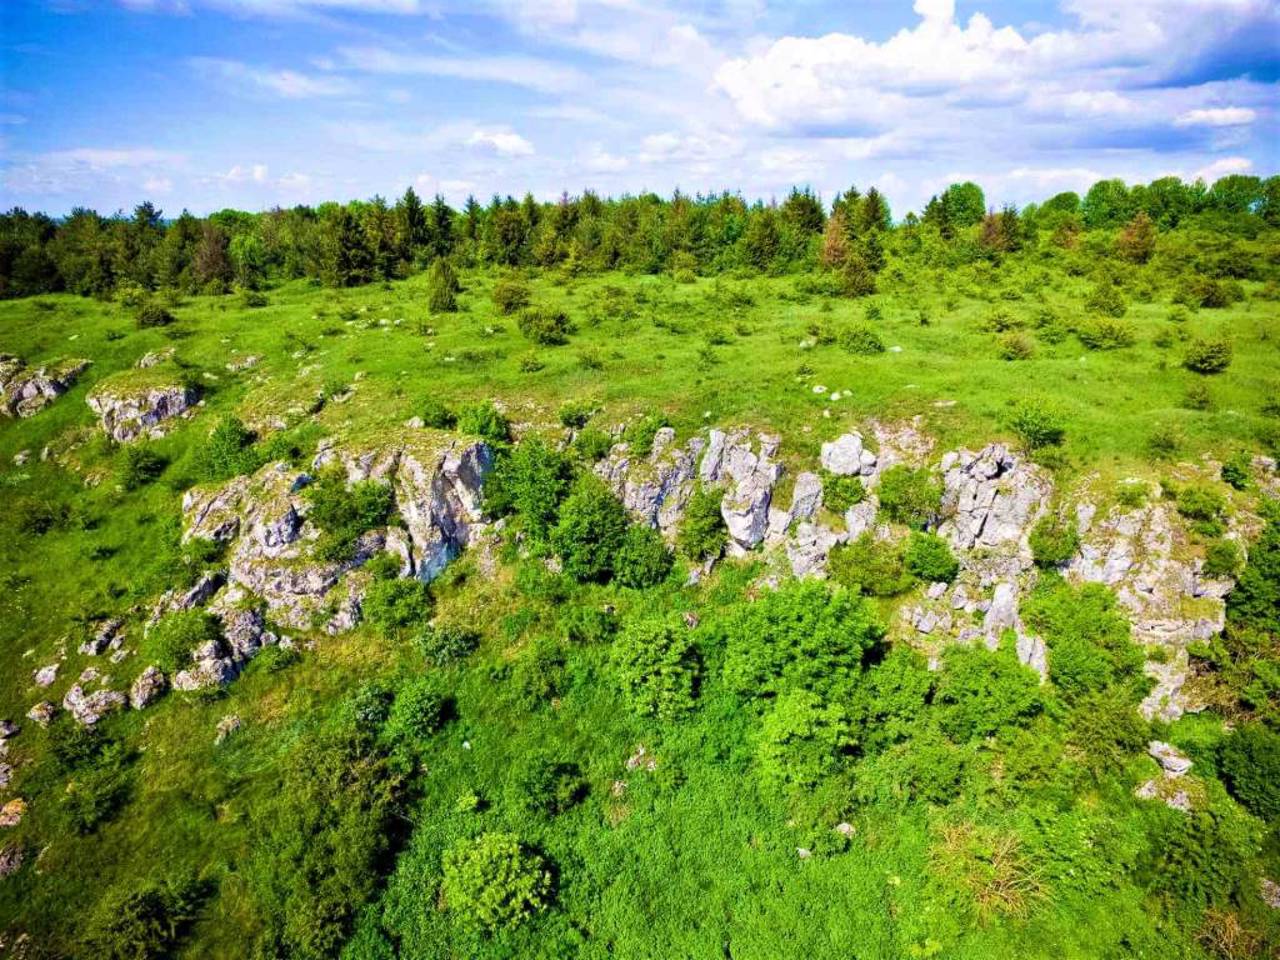 Reserve "Medobory", Hrymailiv